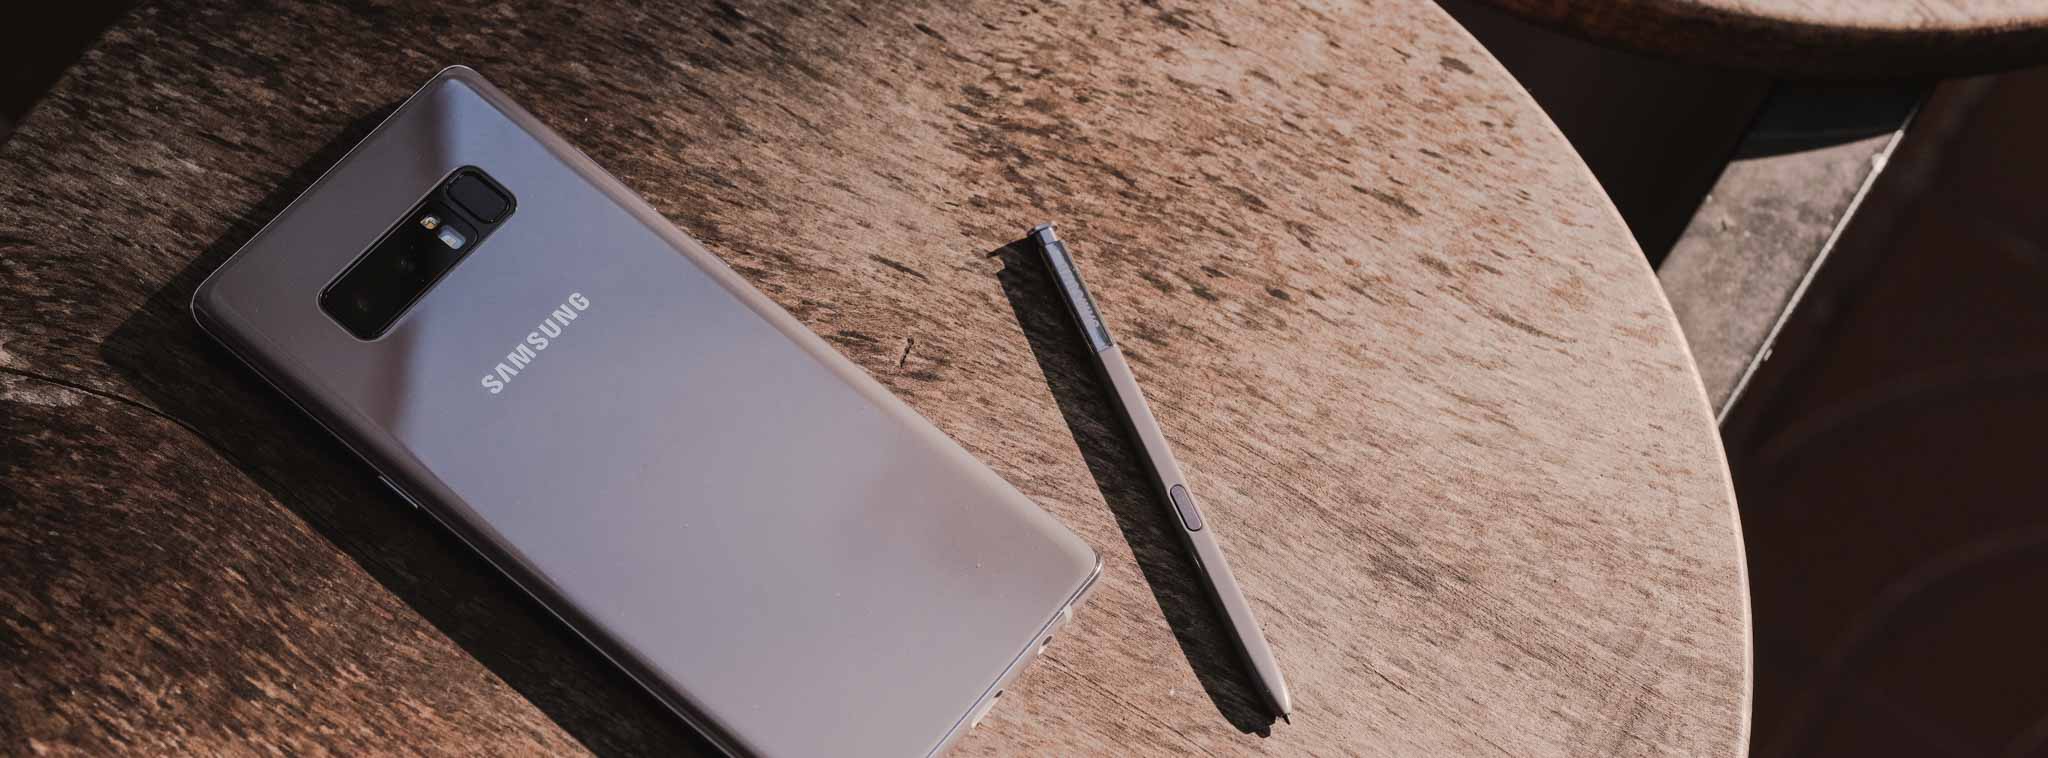 Hình ảnh Galaxy Note8 Xám Phong Lan sắp bán ra